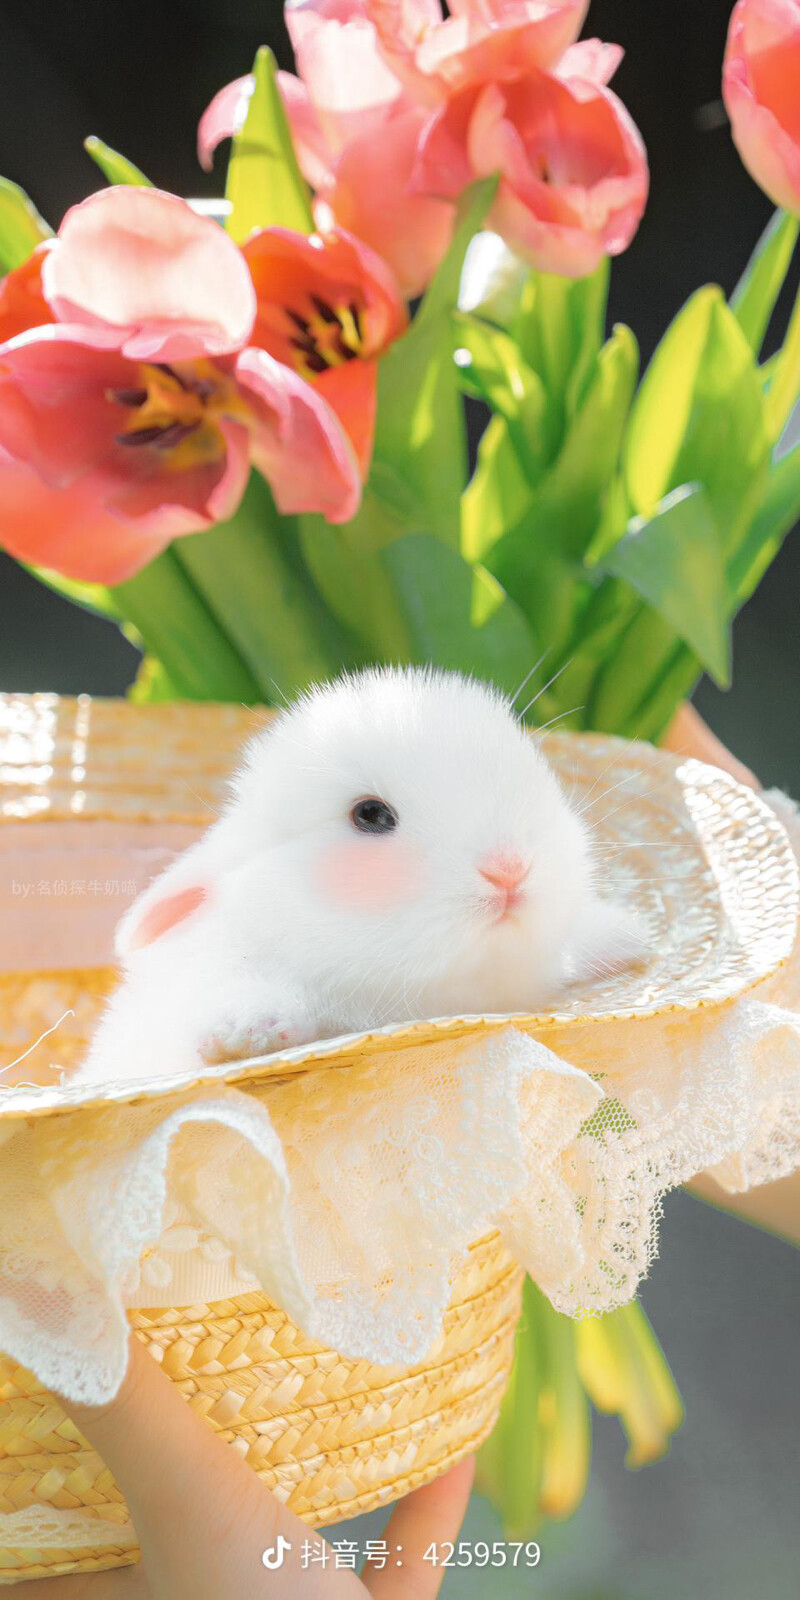 奶油味的小兔子 来自名侦探牛奶喵 - 堆糖,美图壁纸